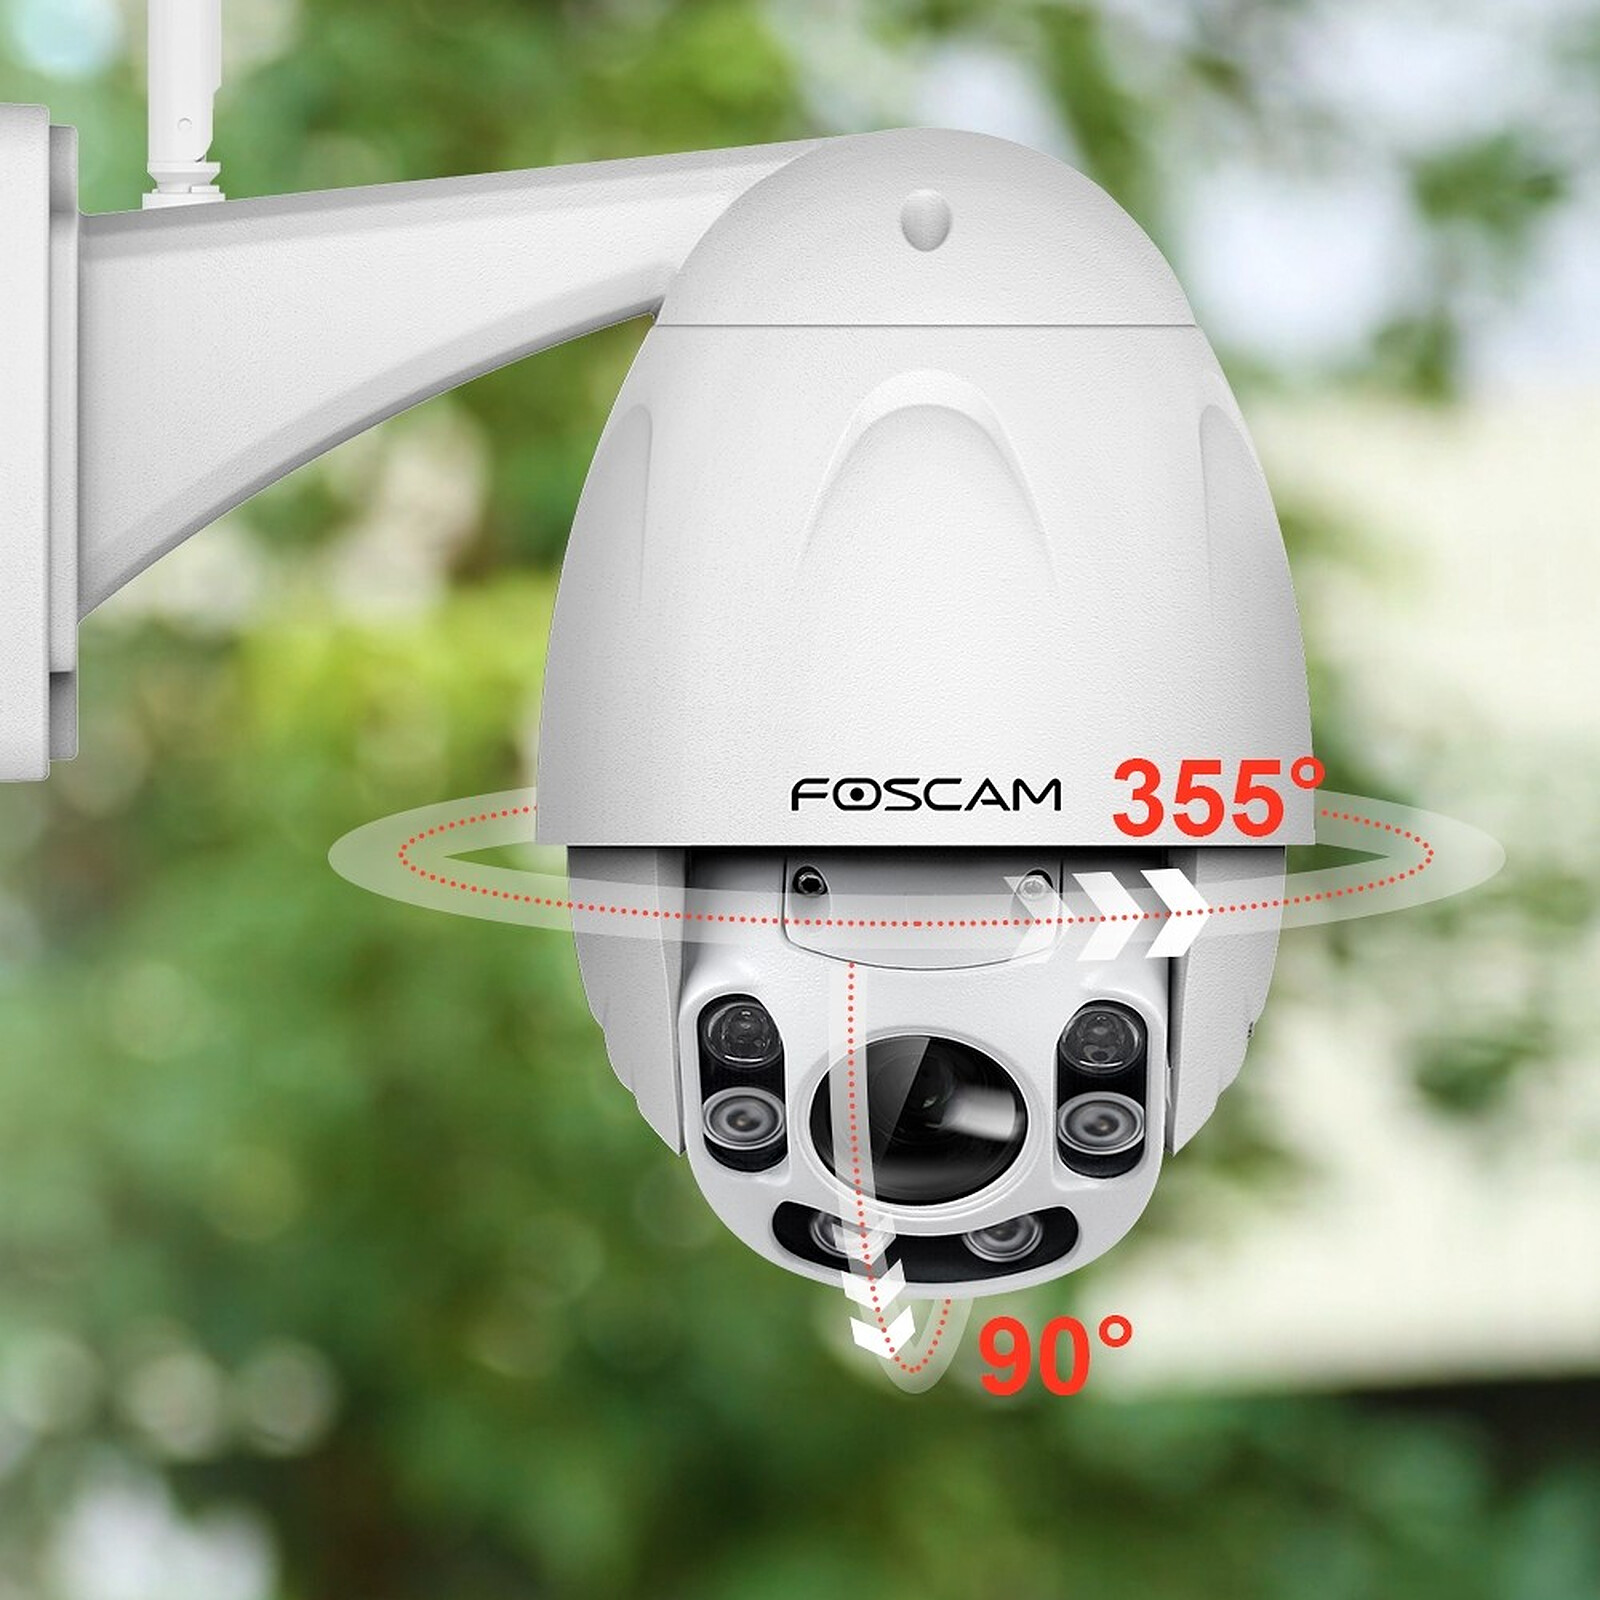 Caméra de sécurité filaire extérieure 1080p - R9044 - Woox